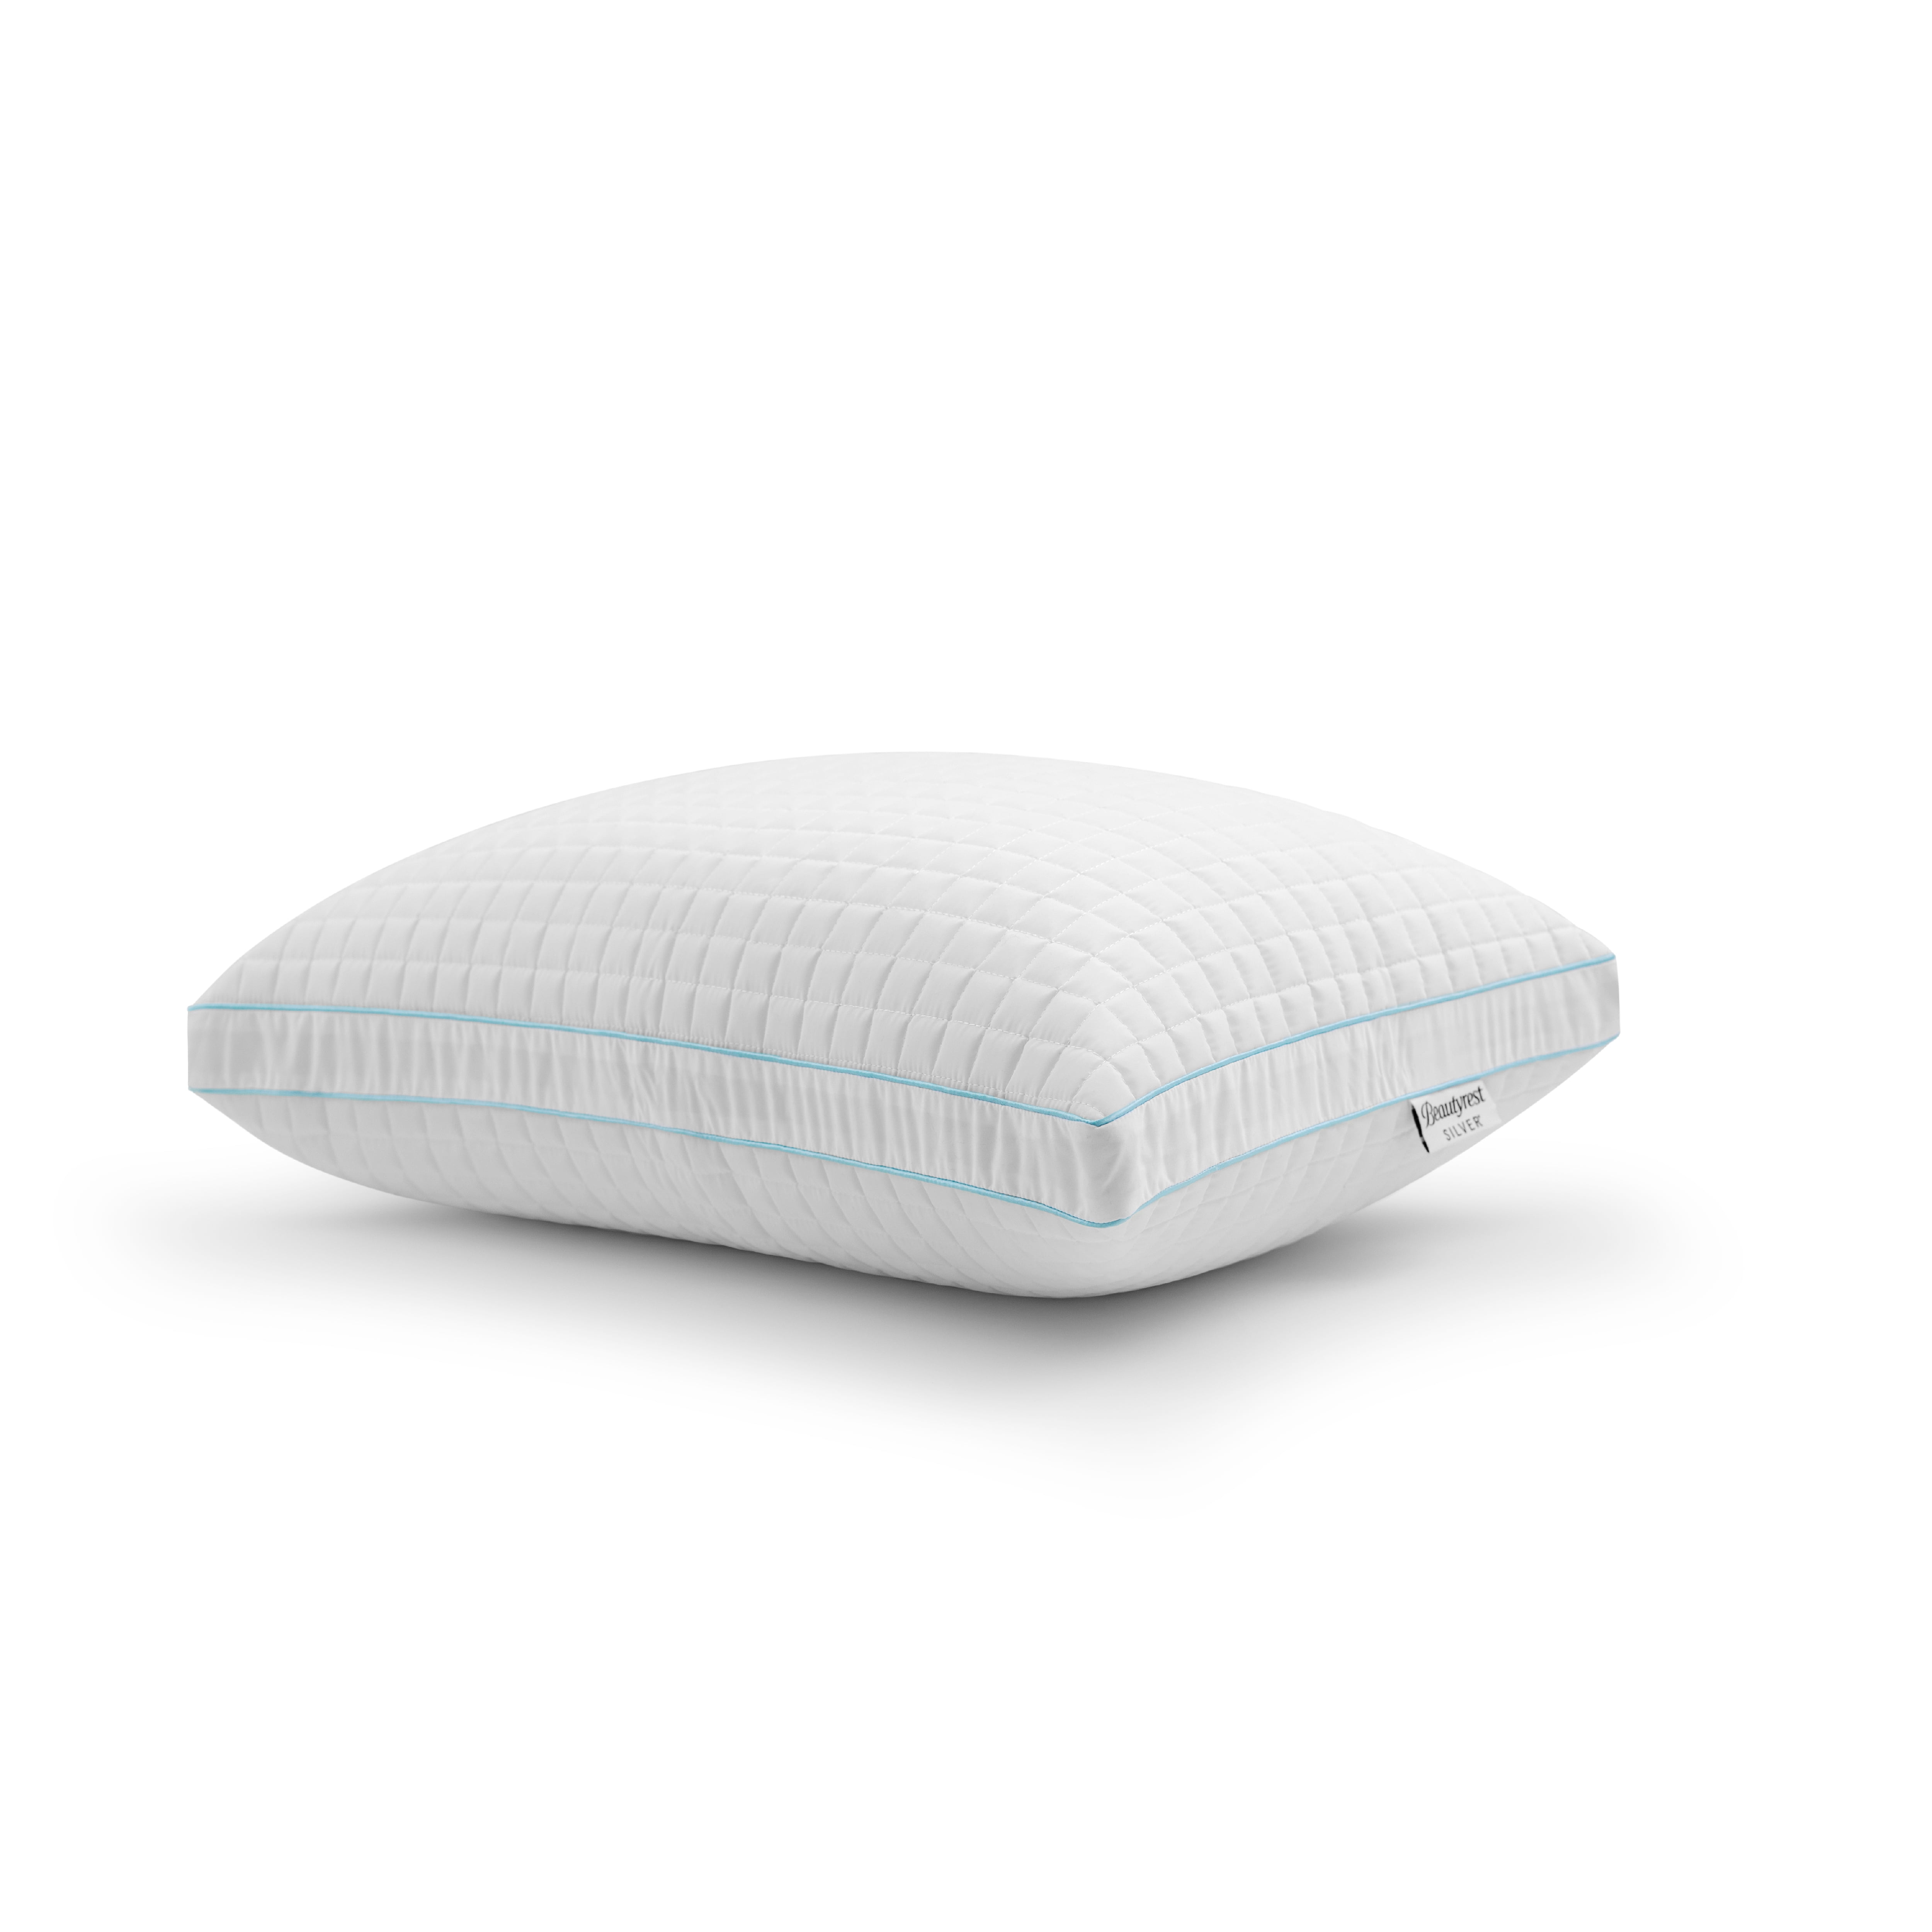 Details about   Simmons Beautyrest InfiniCool Calming Rest Fiber Pillow ~ Standard Queen Size 